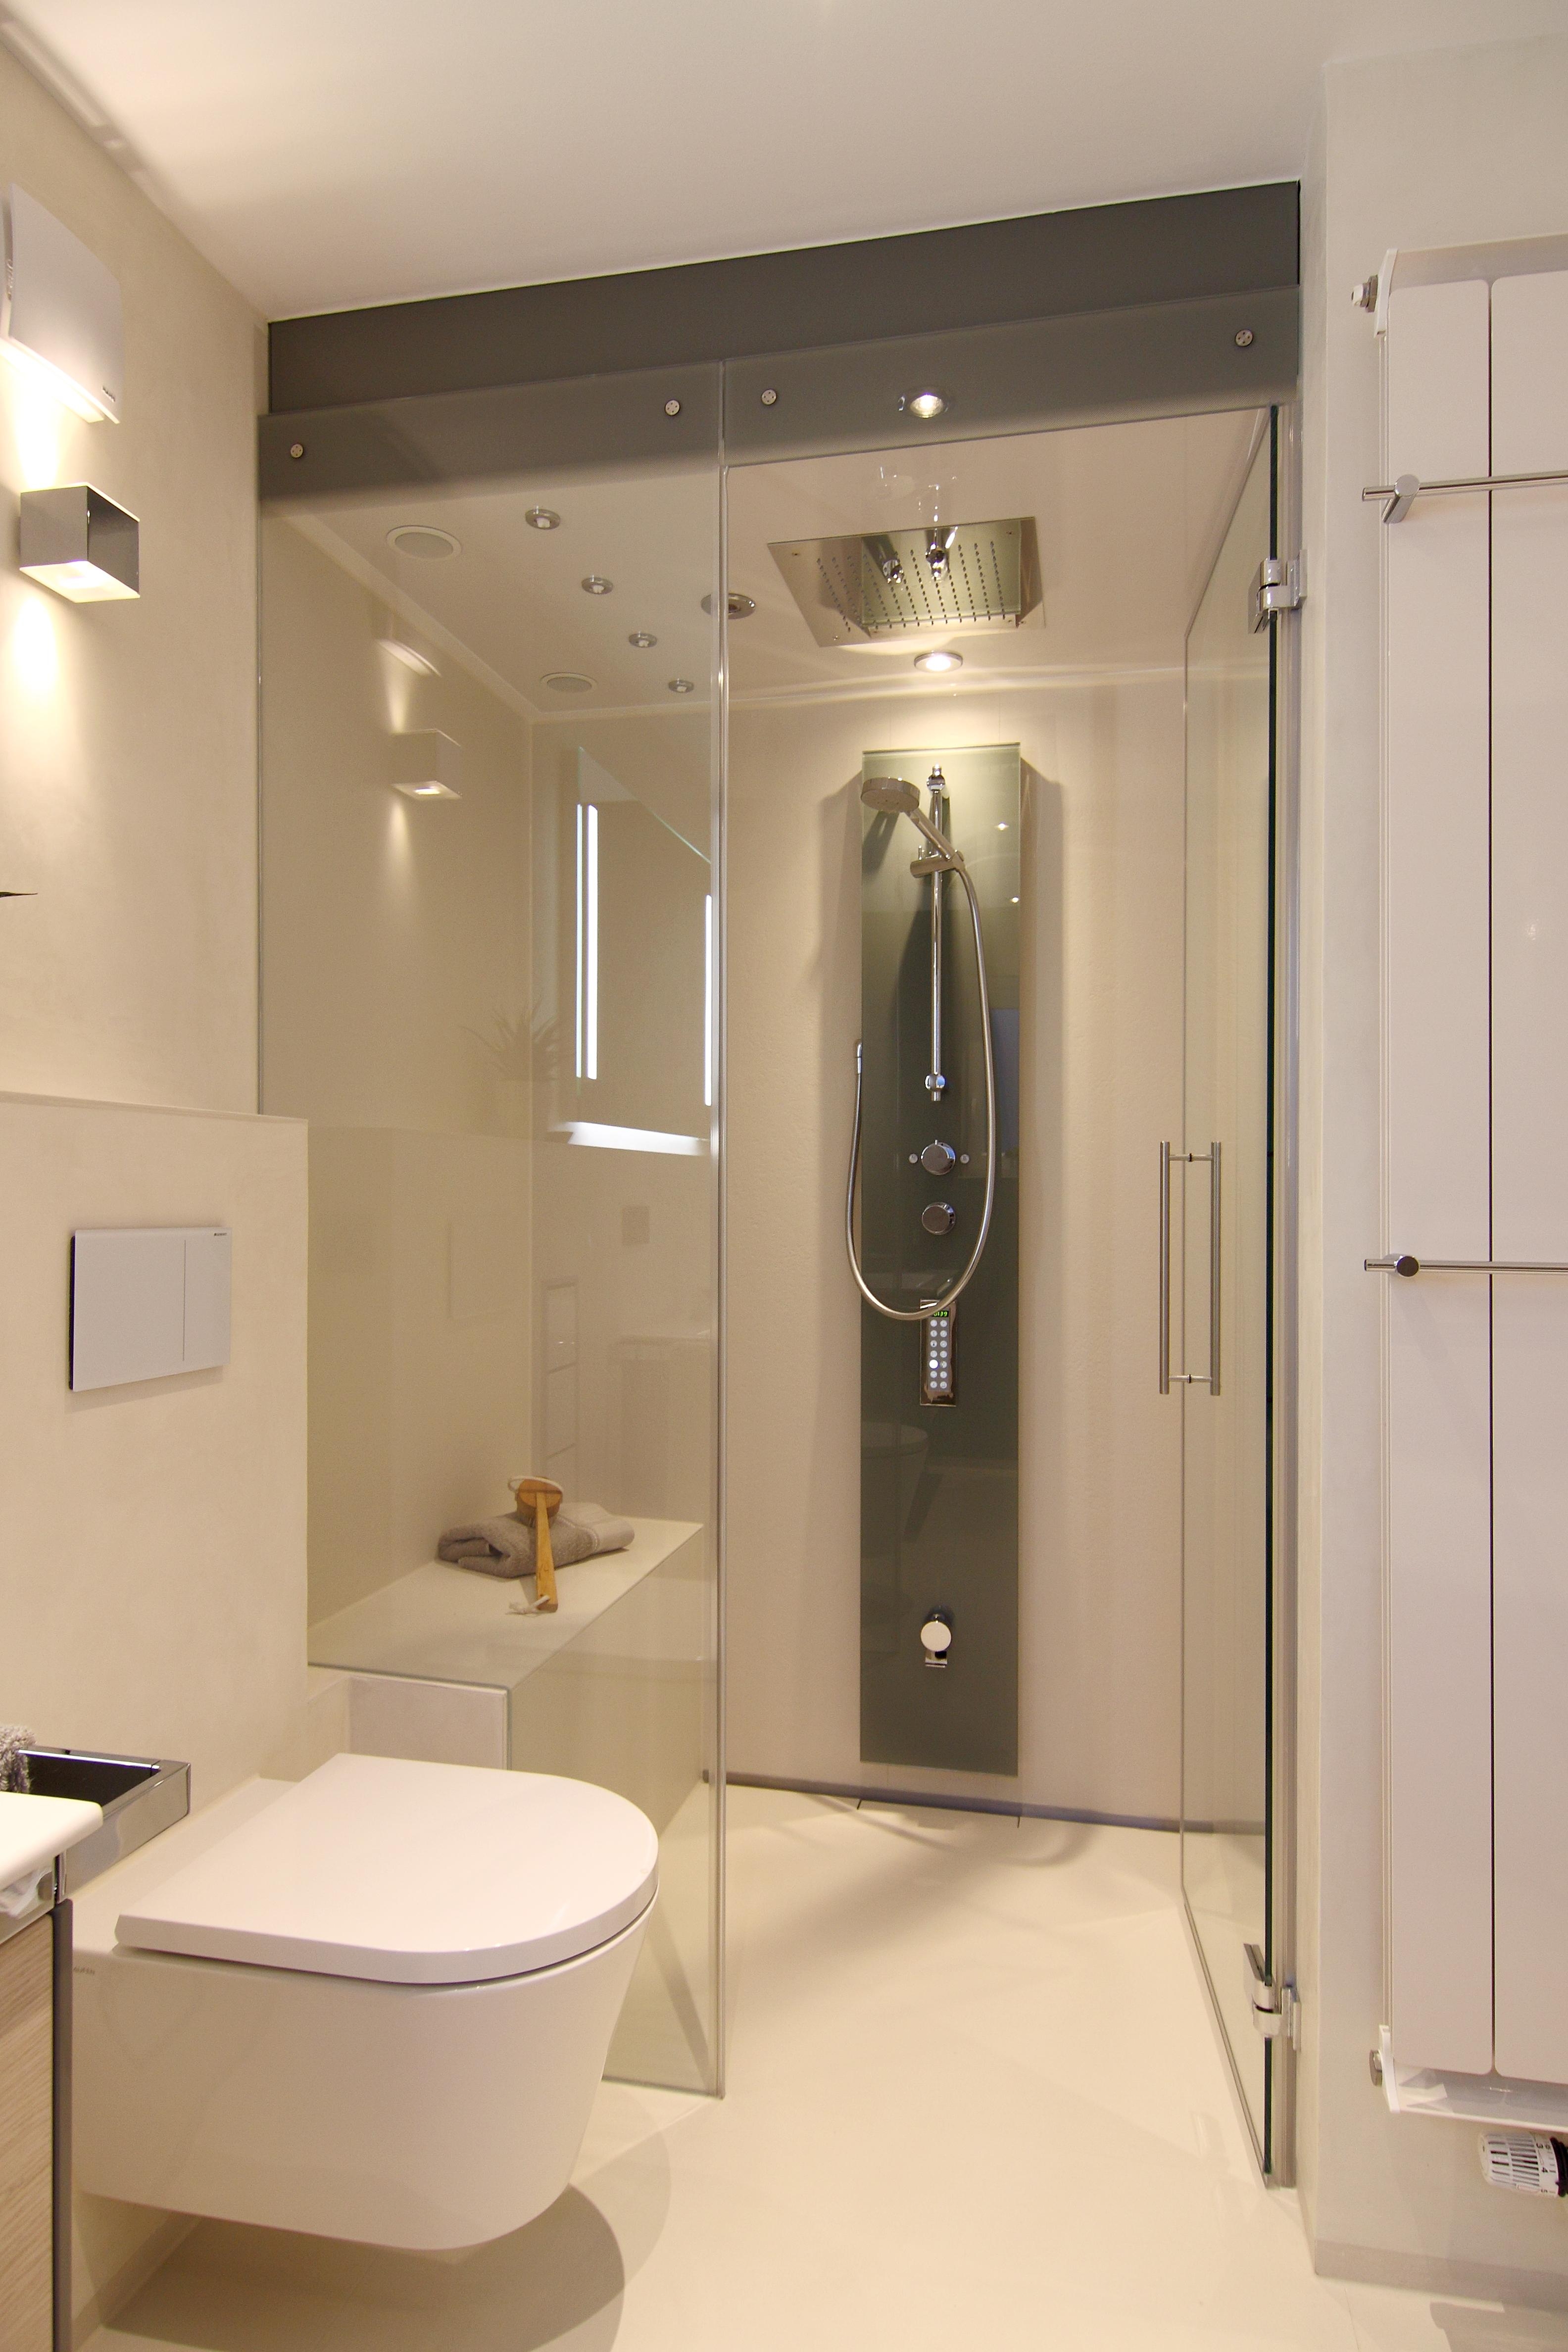 -Anzeige- #bestebadstudios #badezimmer #bad #wc #dusche #modernesbadezimmer #badsanierung